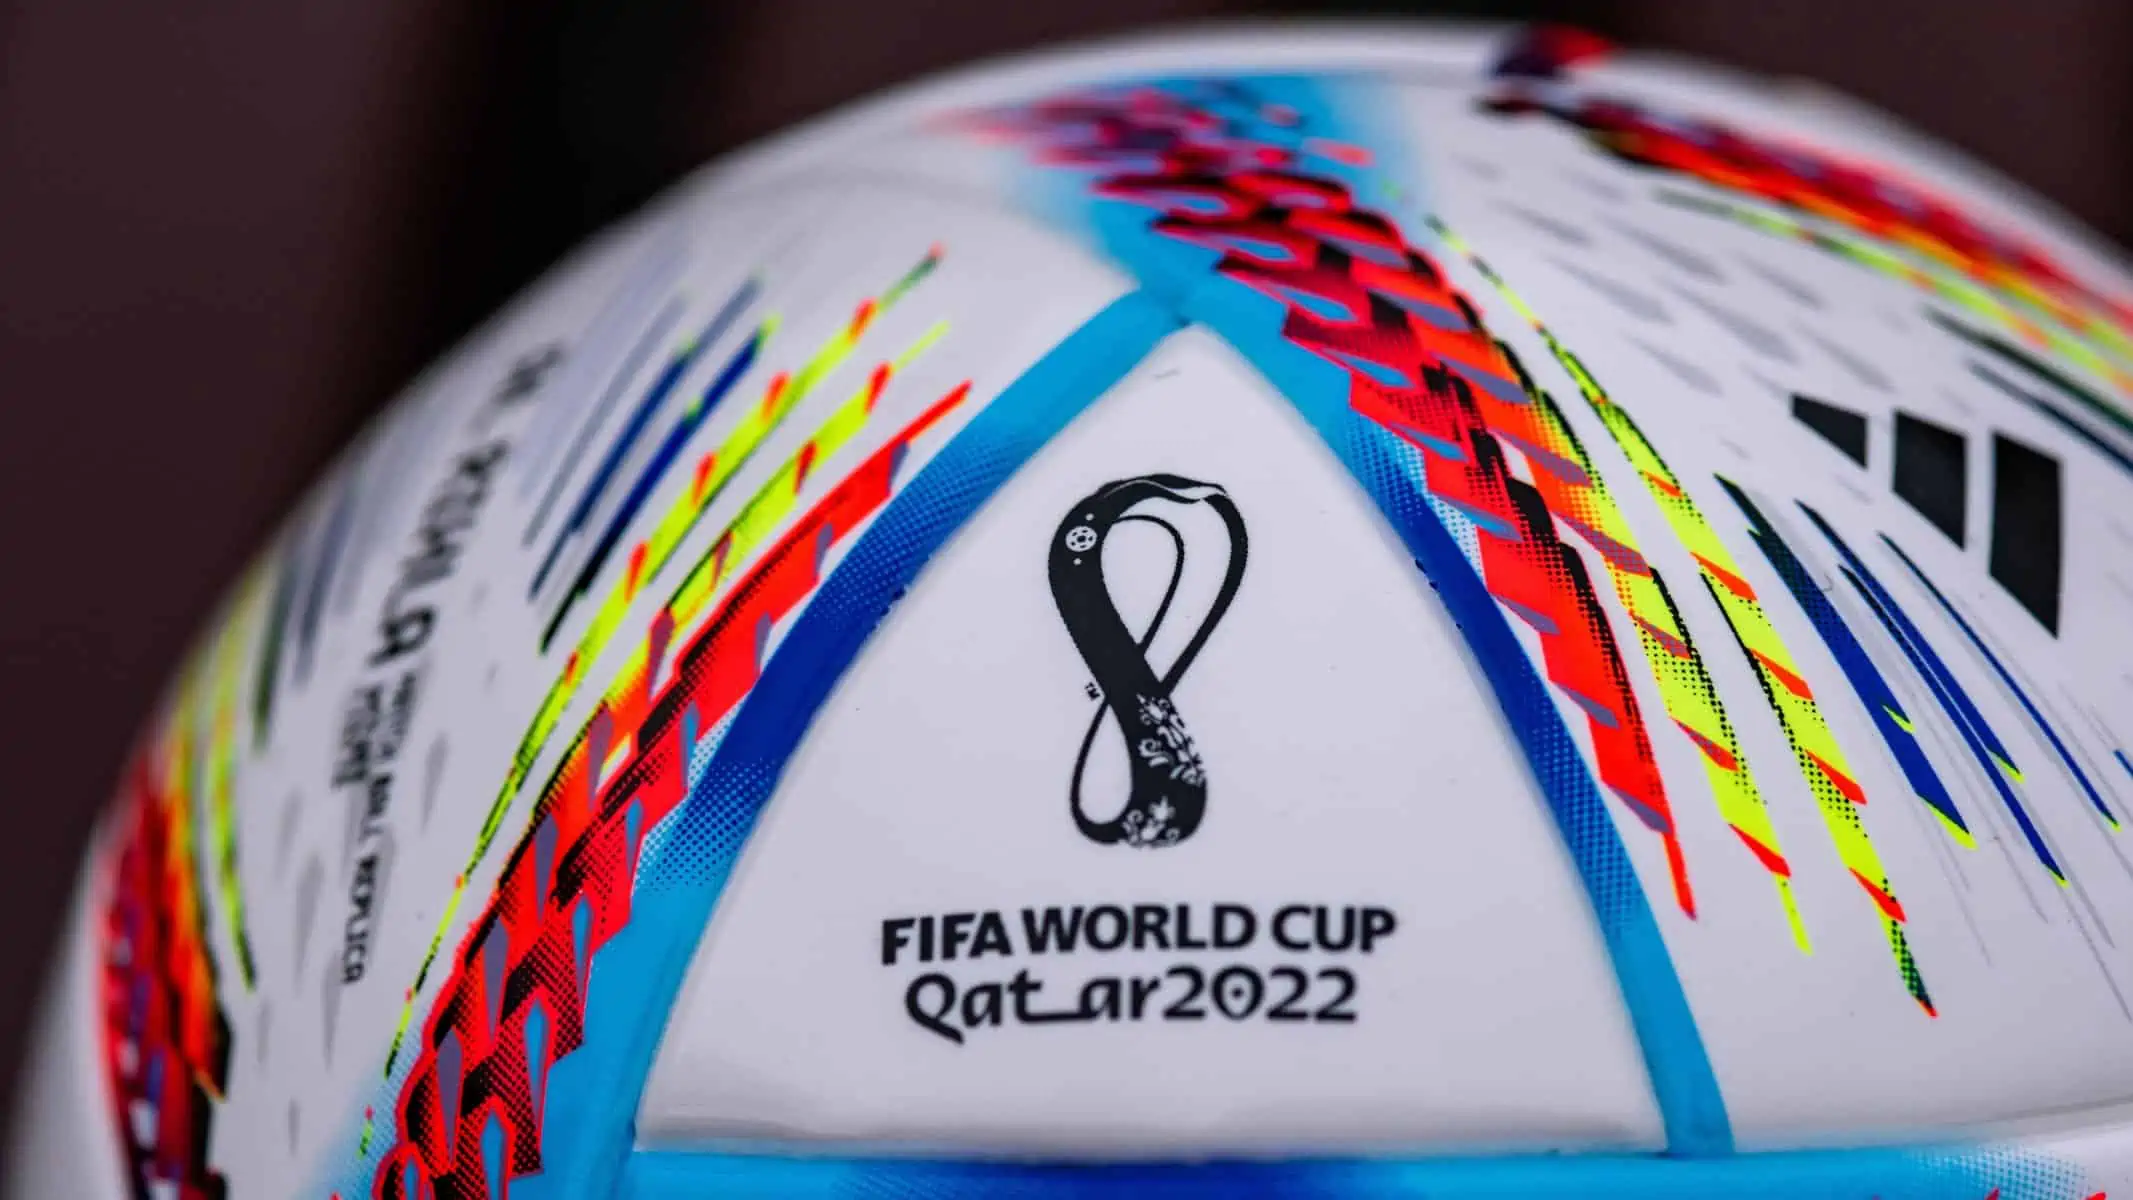 Cosas que Debes Saber de la Copa Mundial de Fútbol Catar 2022